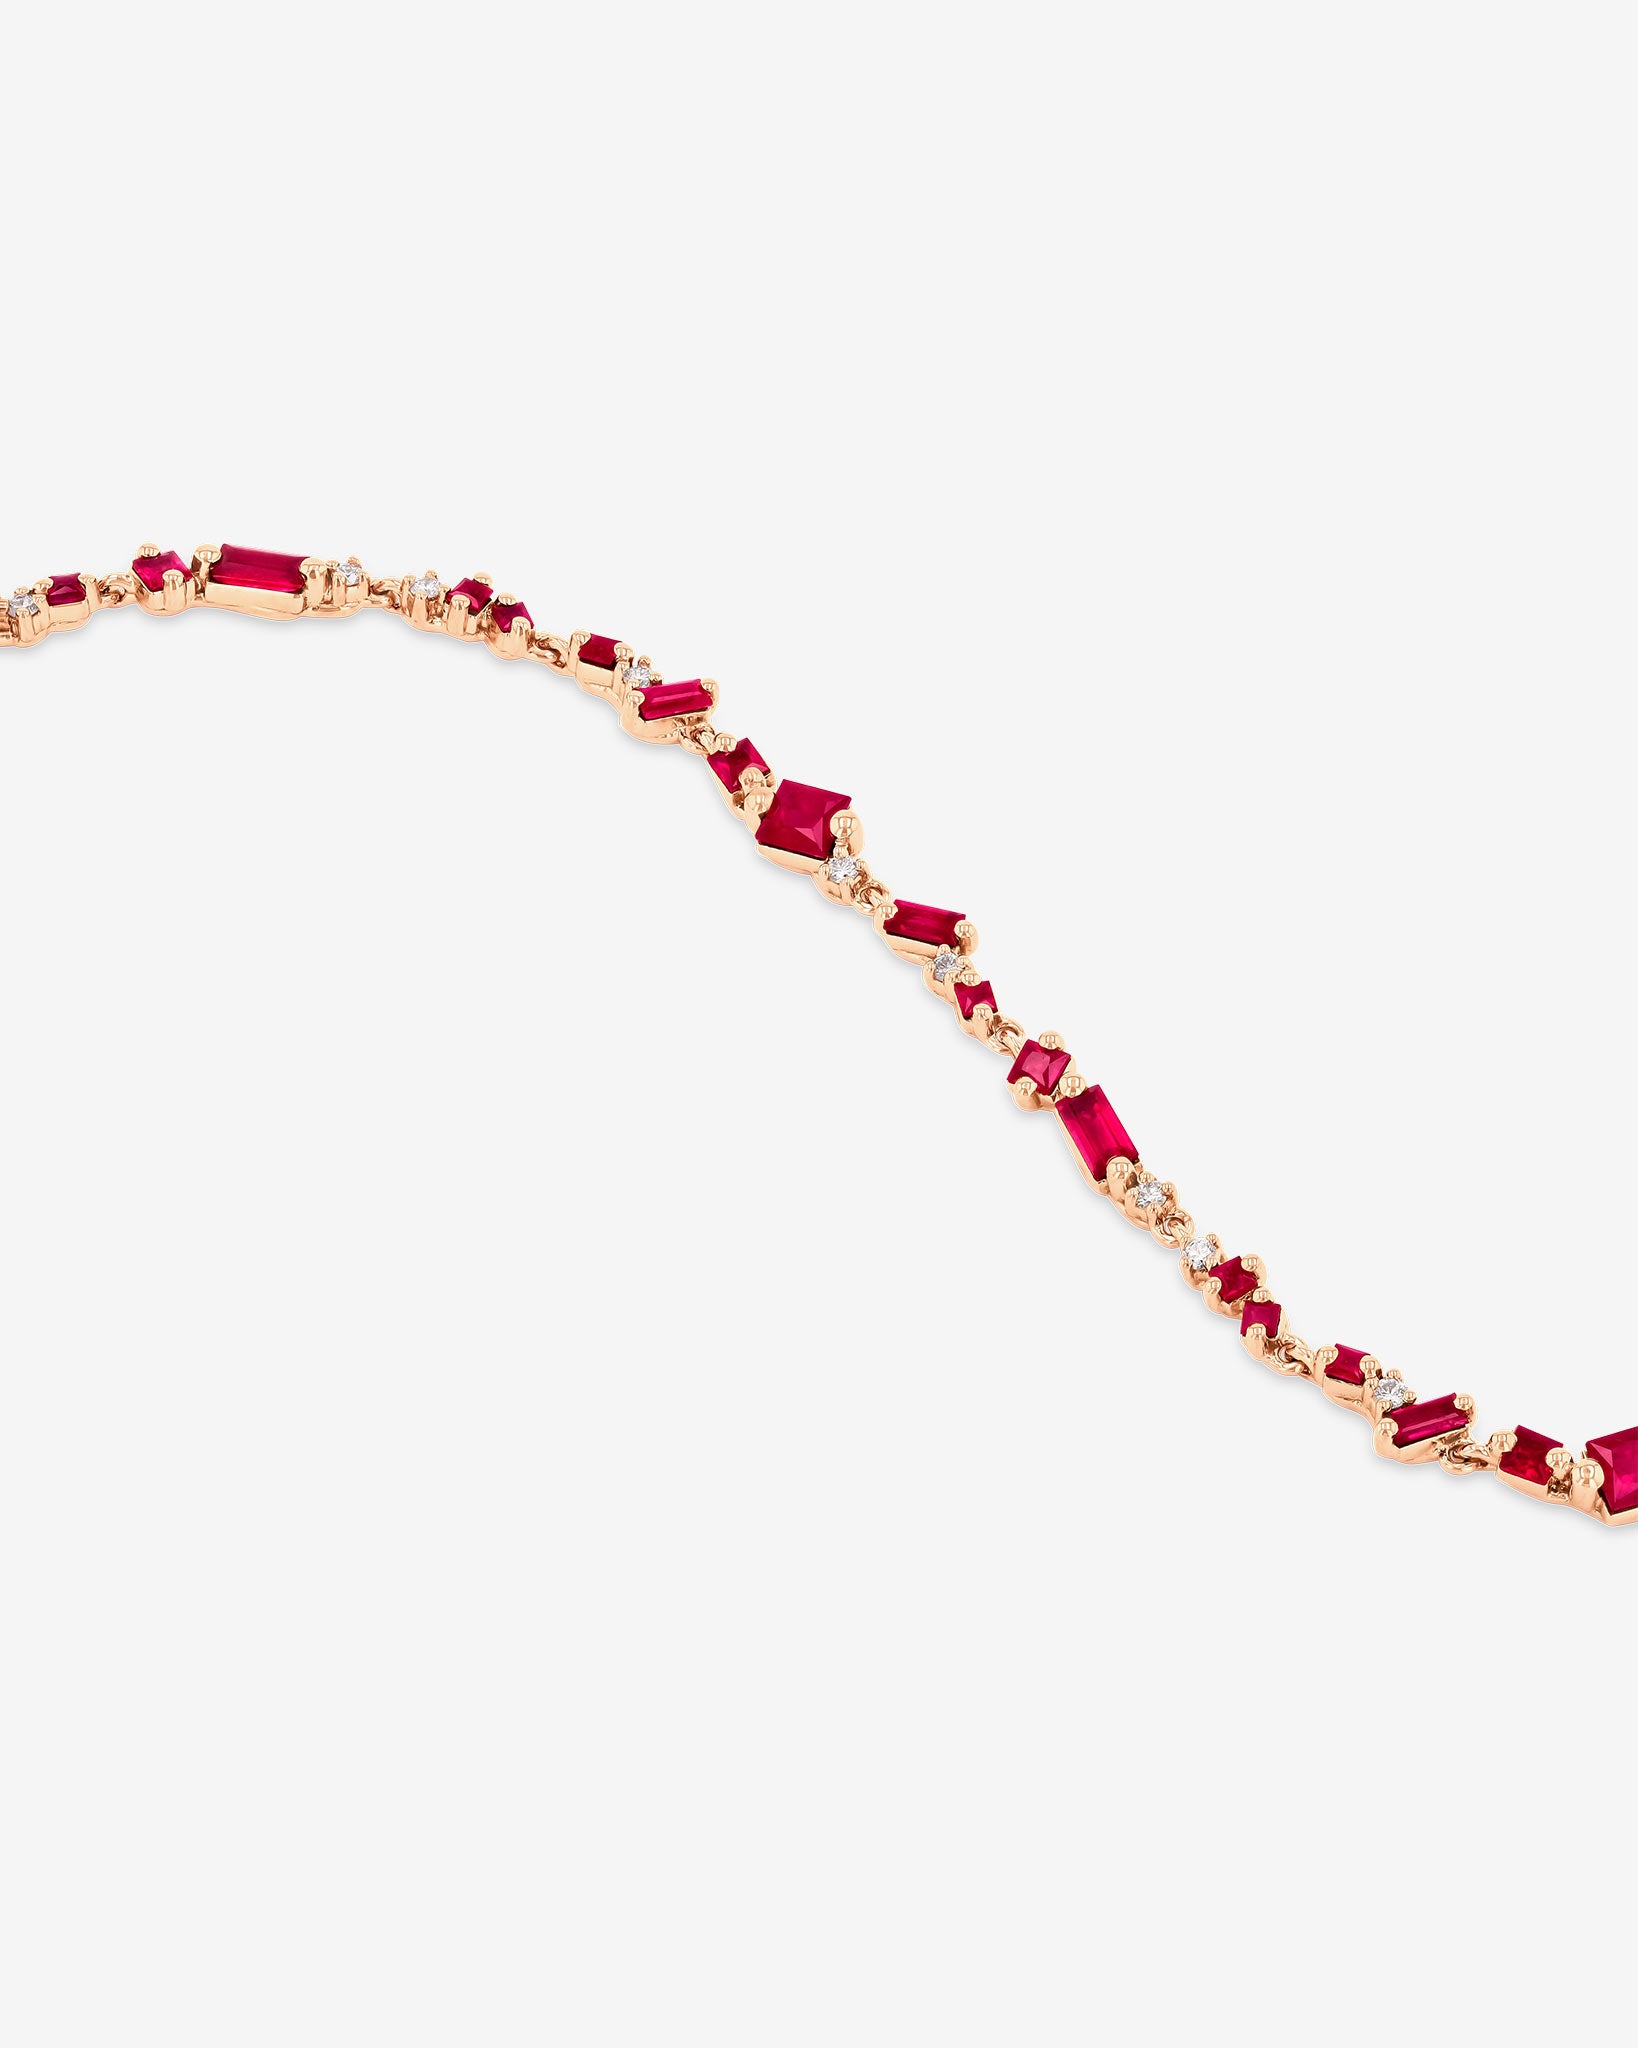 Suzanne Kalan La Fantaisie Star Dust Ruby Bracelet in 18k rose gold